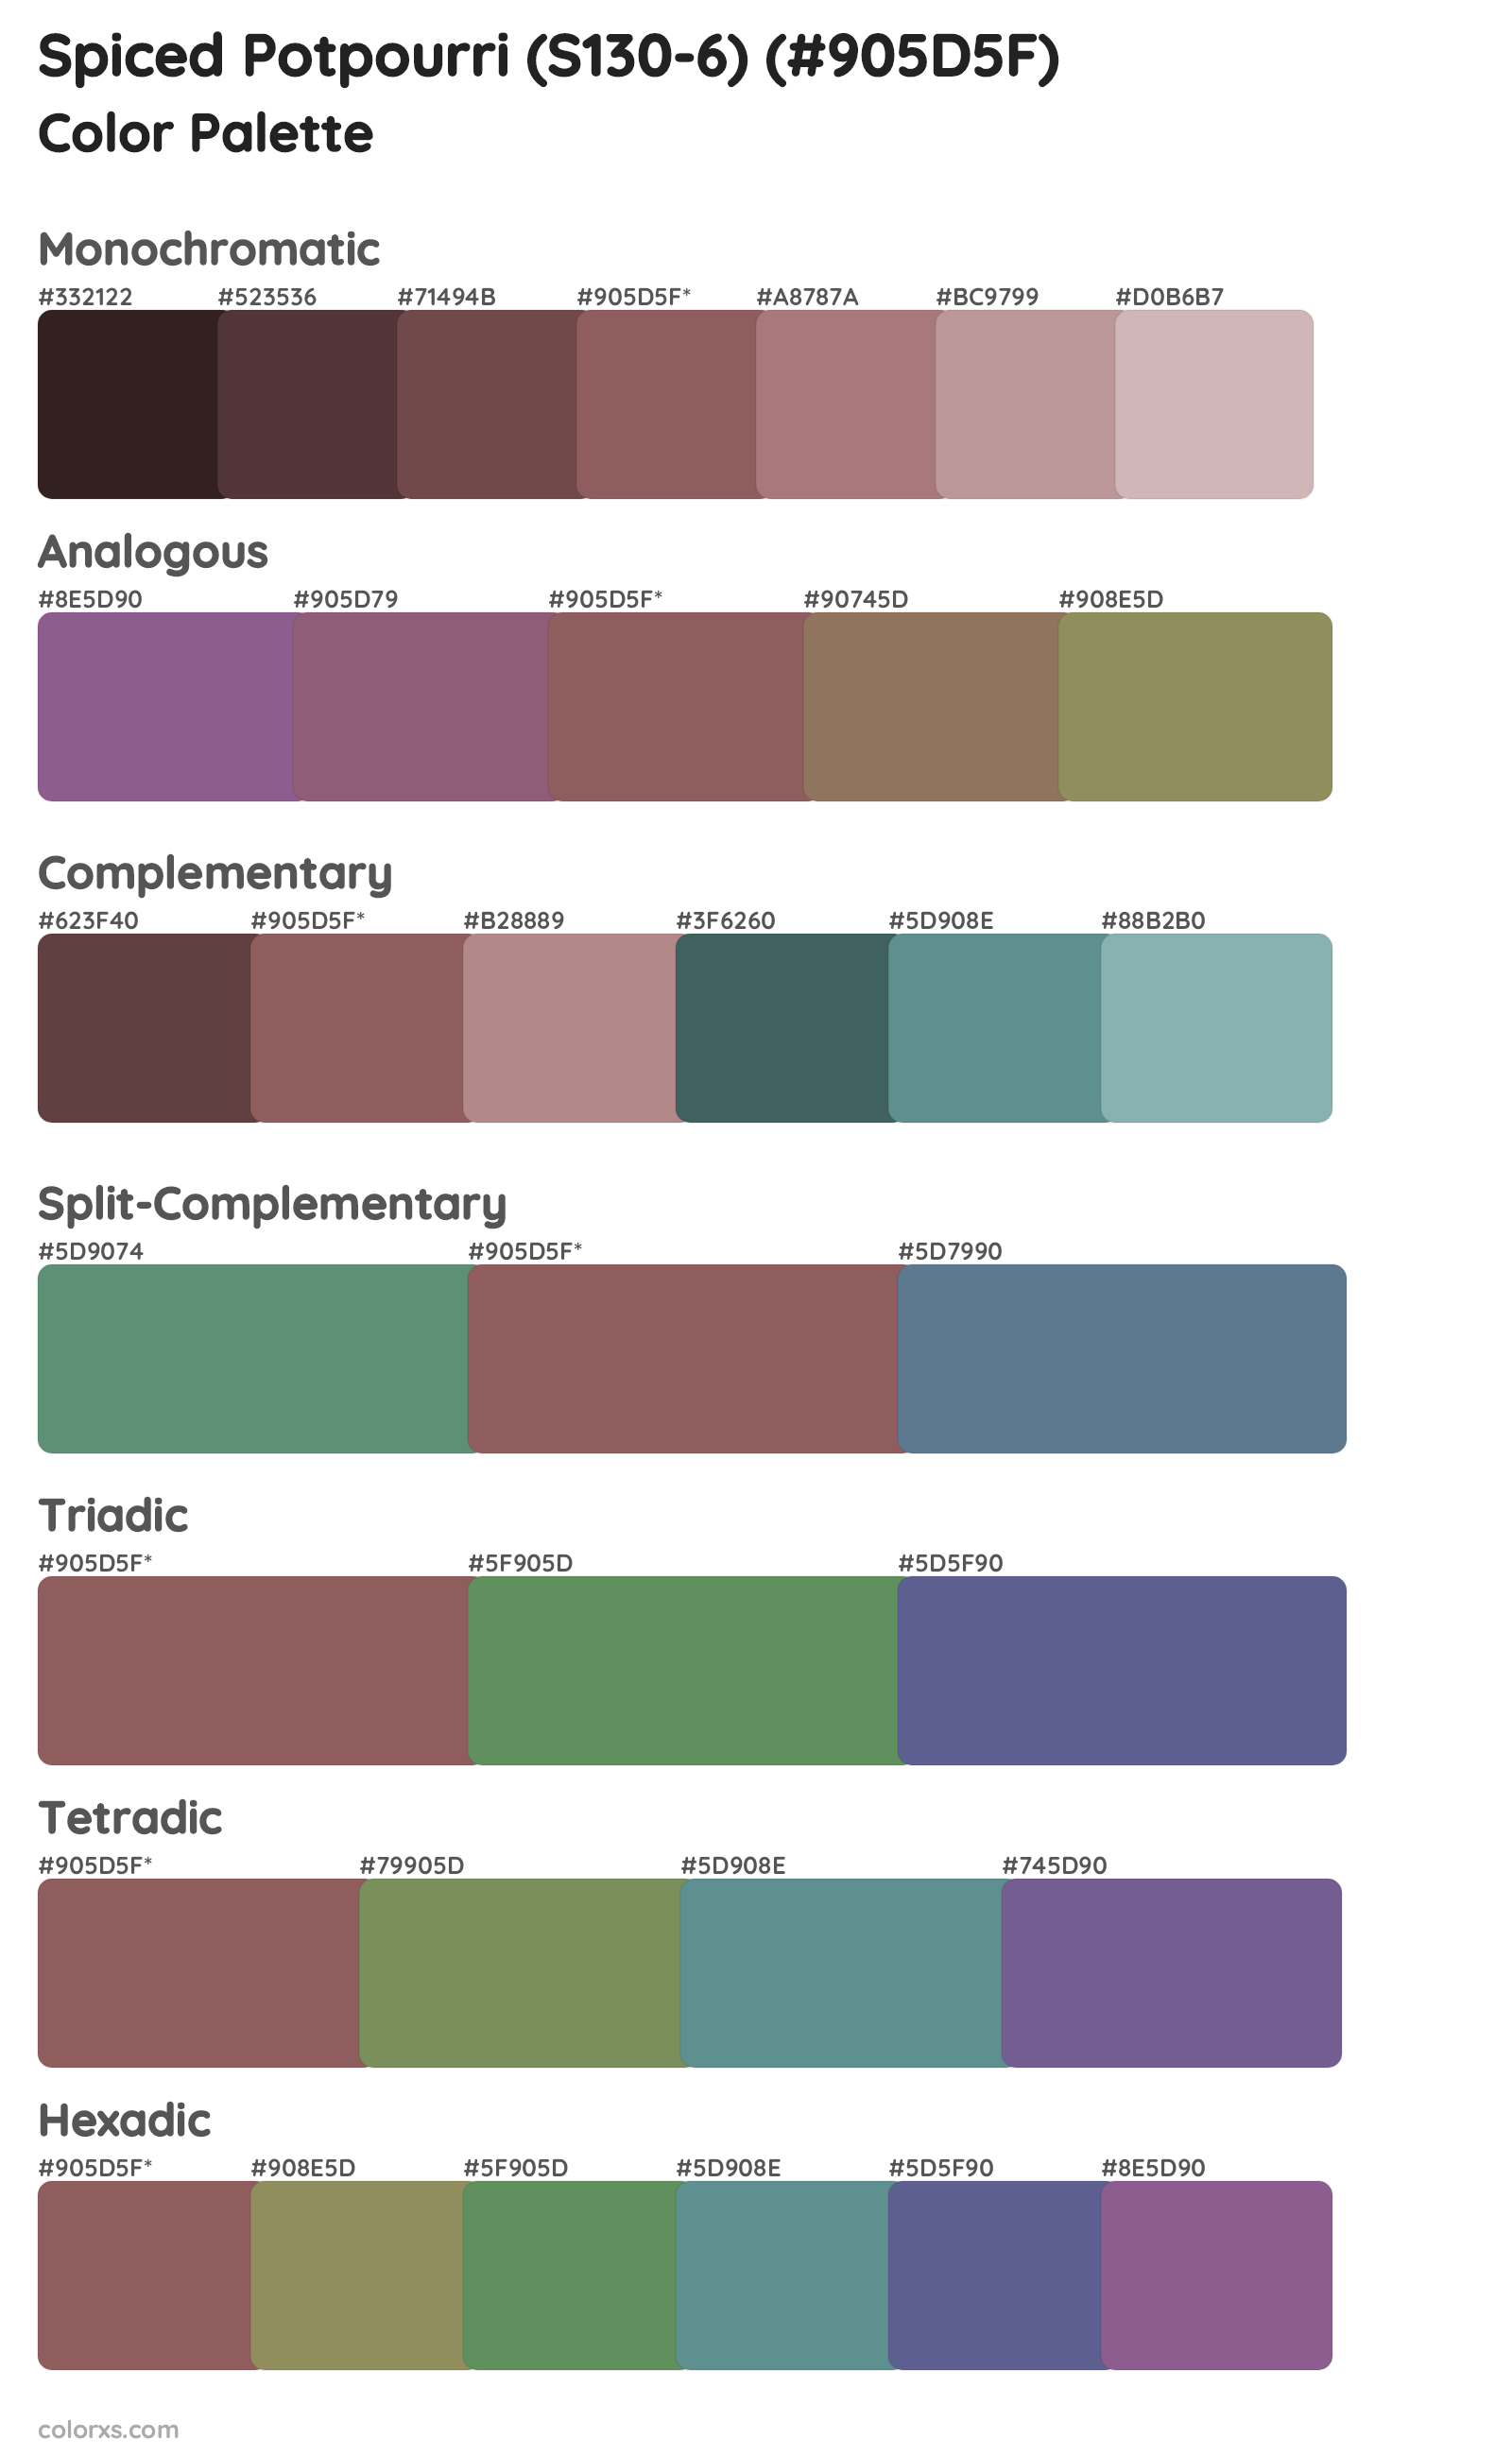 Spiced Potpourri (S130-6) Color Scheme Palettes